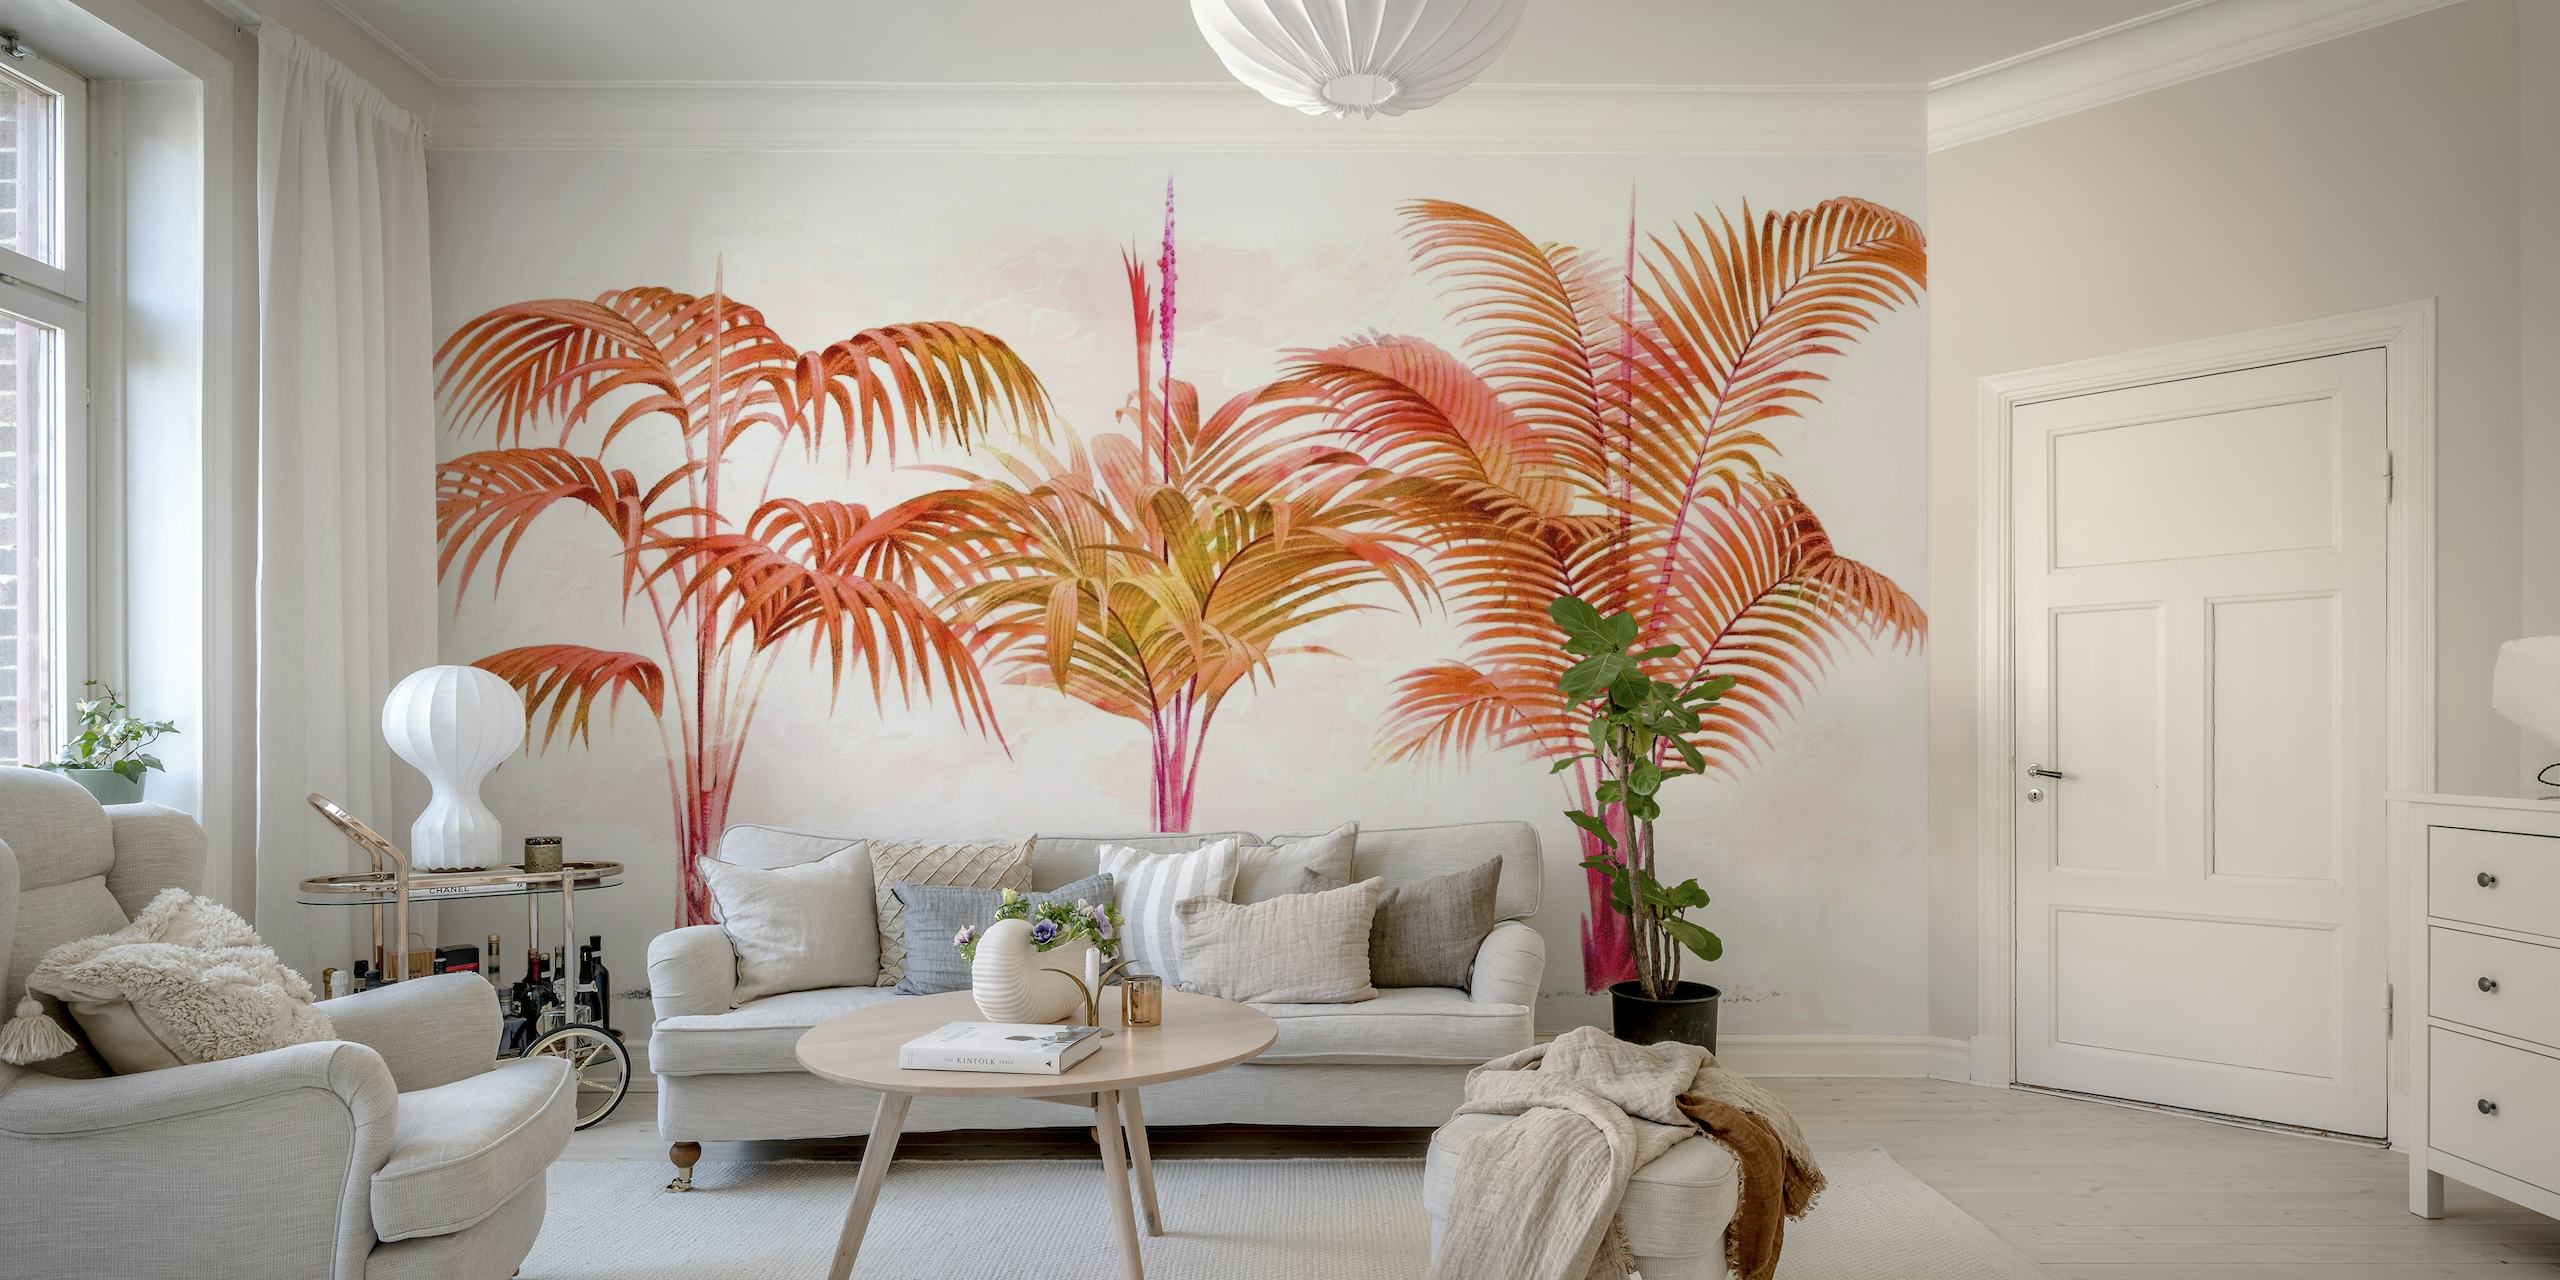 Fotomural vinílico de parede calmante de palmeira em tons quentes.